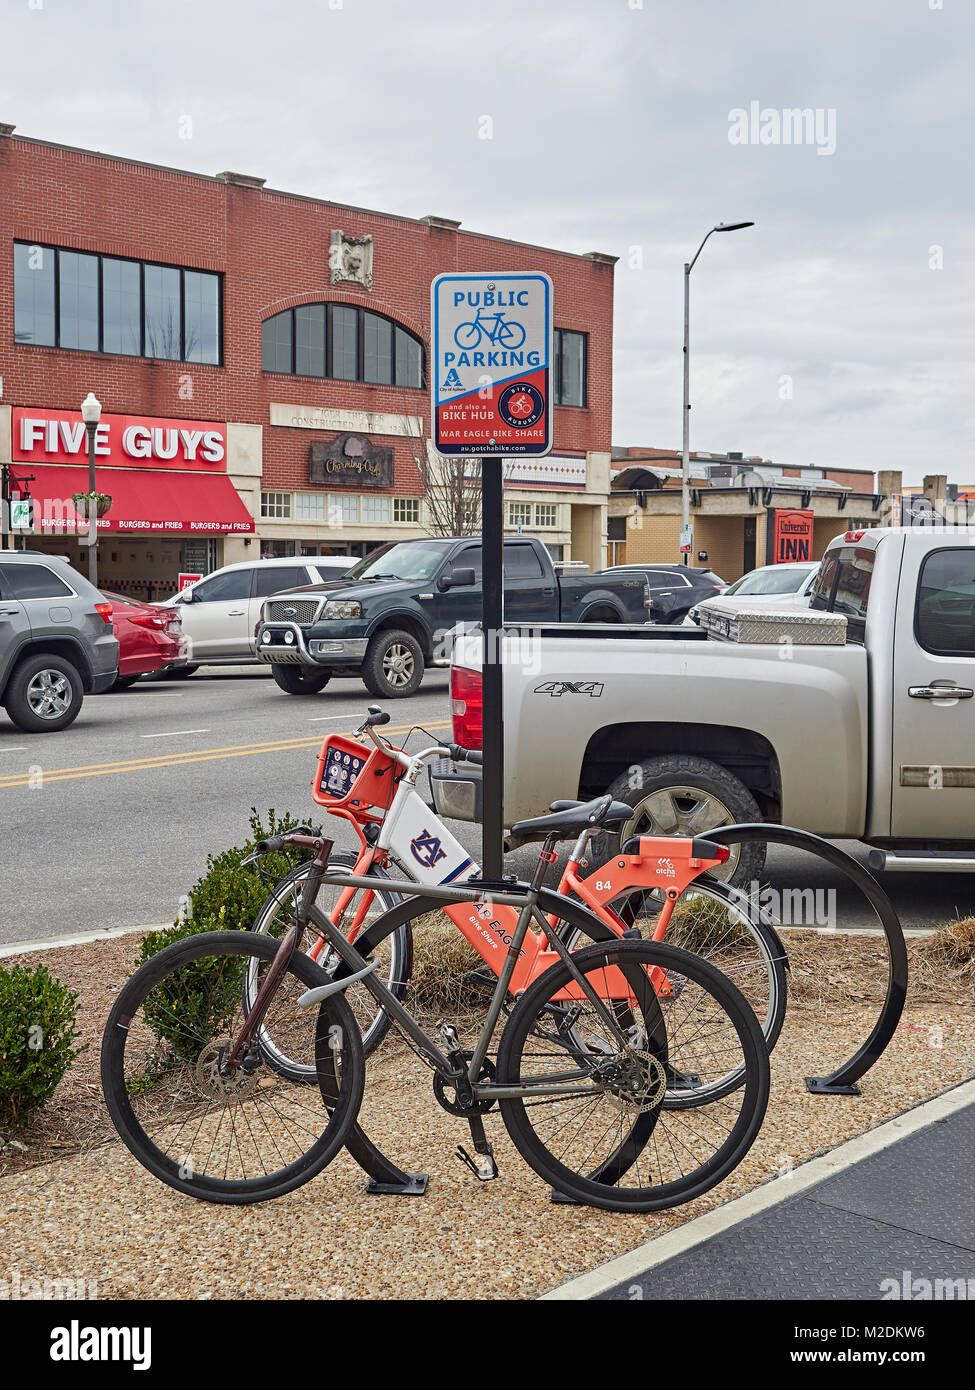 Parking vélo public support avec deux vélos garés, l'une étant une balade vélo partager de la Auburn University, connu comme un moyeu de vélo dans la région de Auburn Alabama USA. Banque D'Images